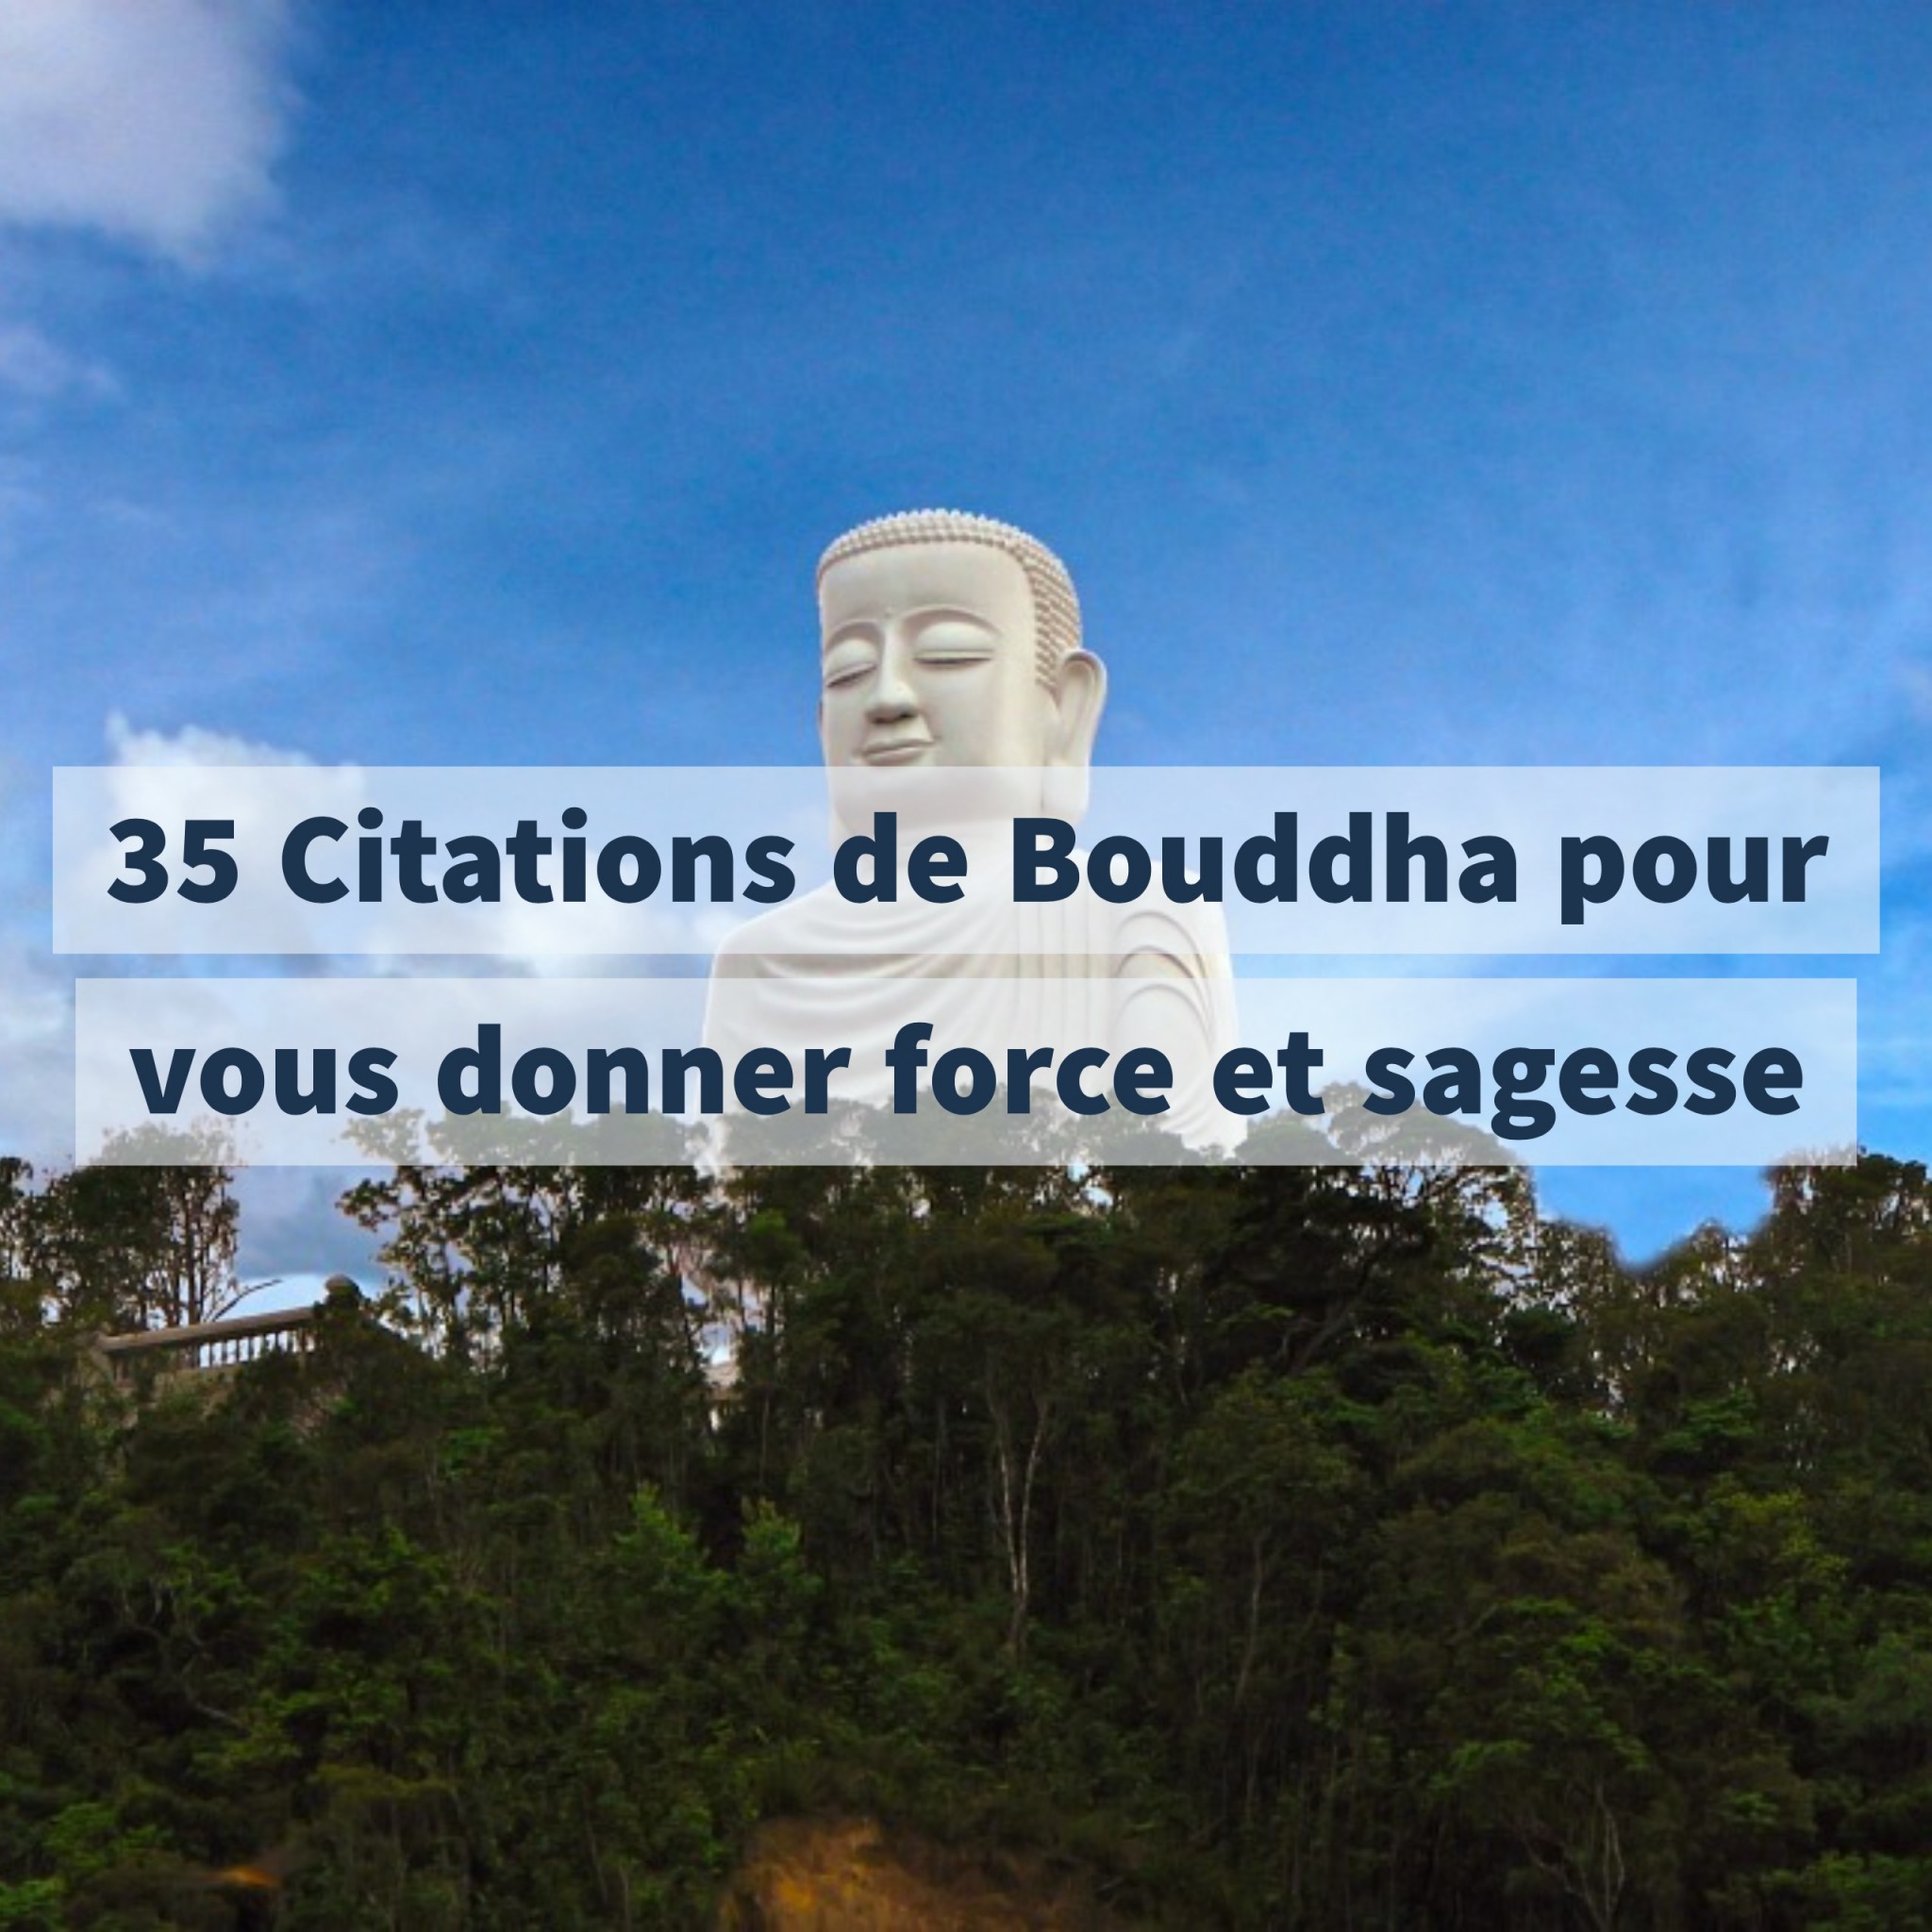 35 Citations de Bouddha pour vous donner force et sagesse